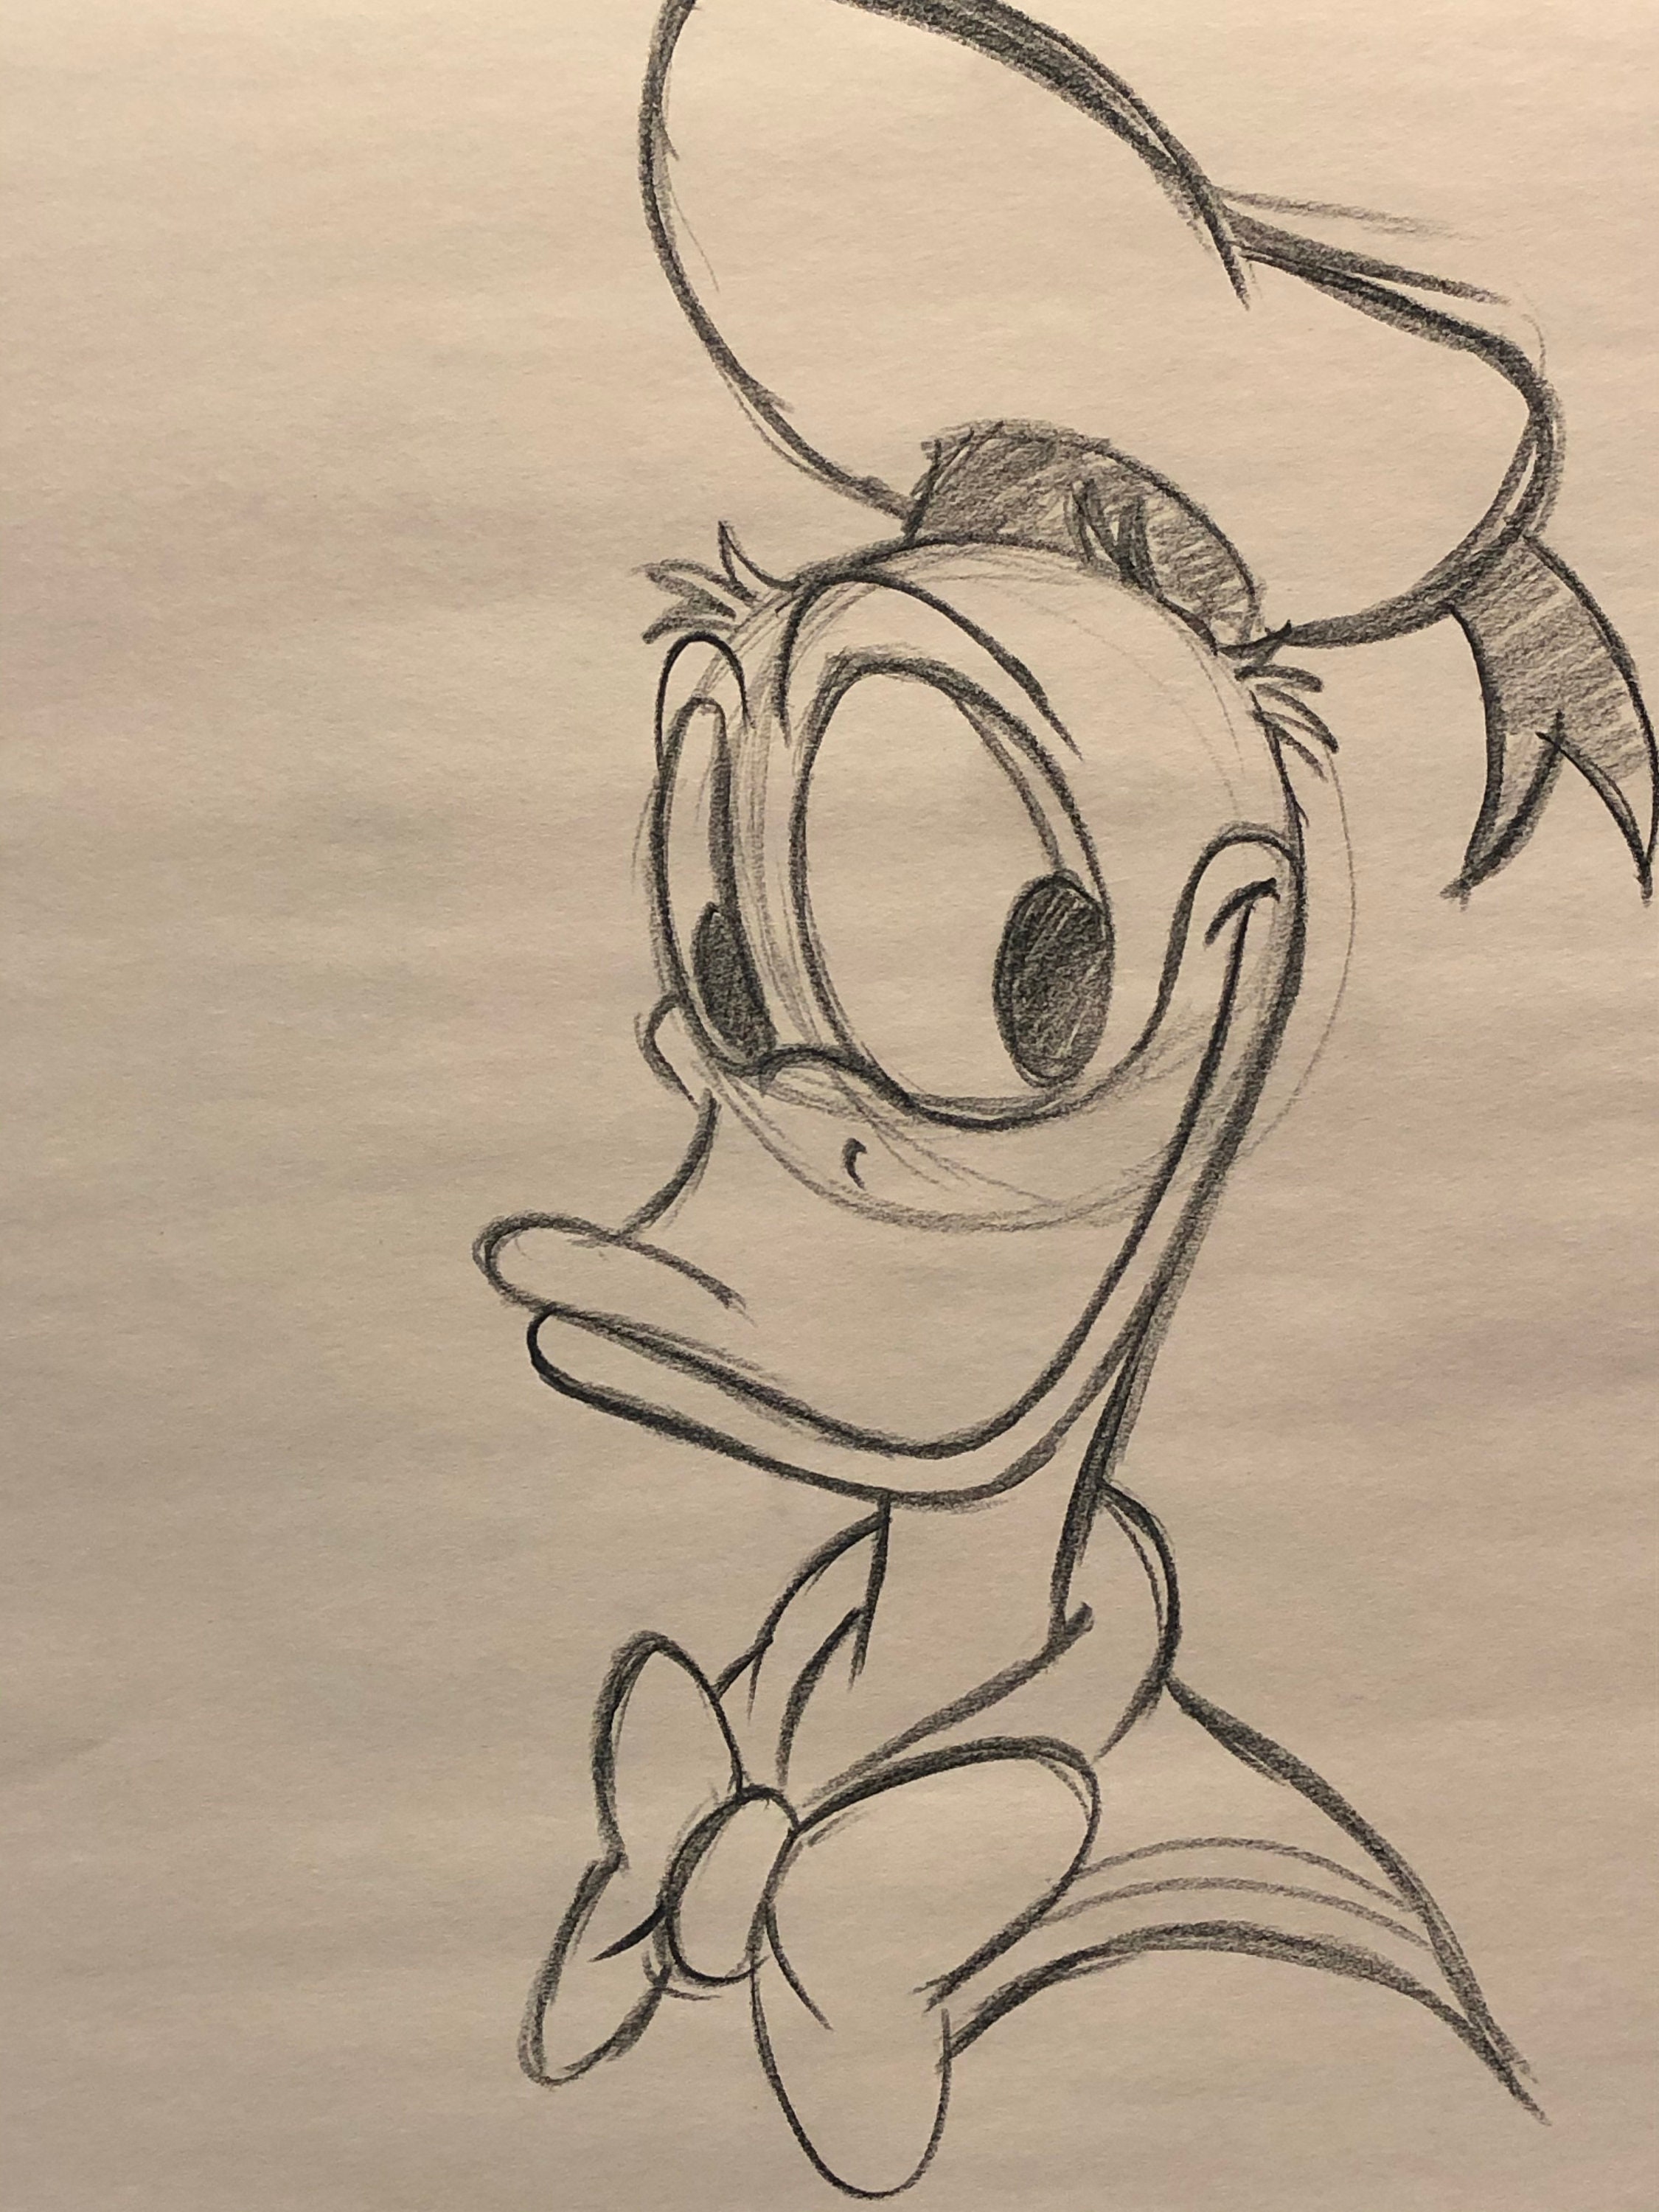 Donald Duck sketch by TedJohansson on DeviantArt